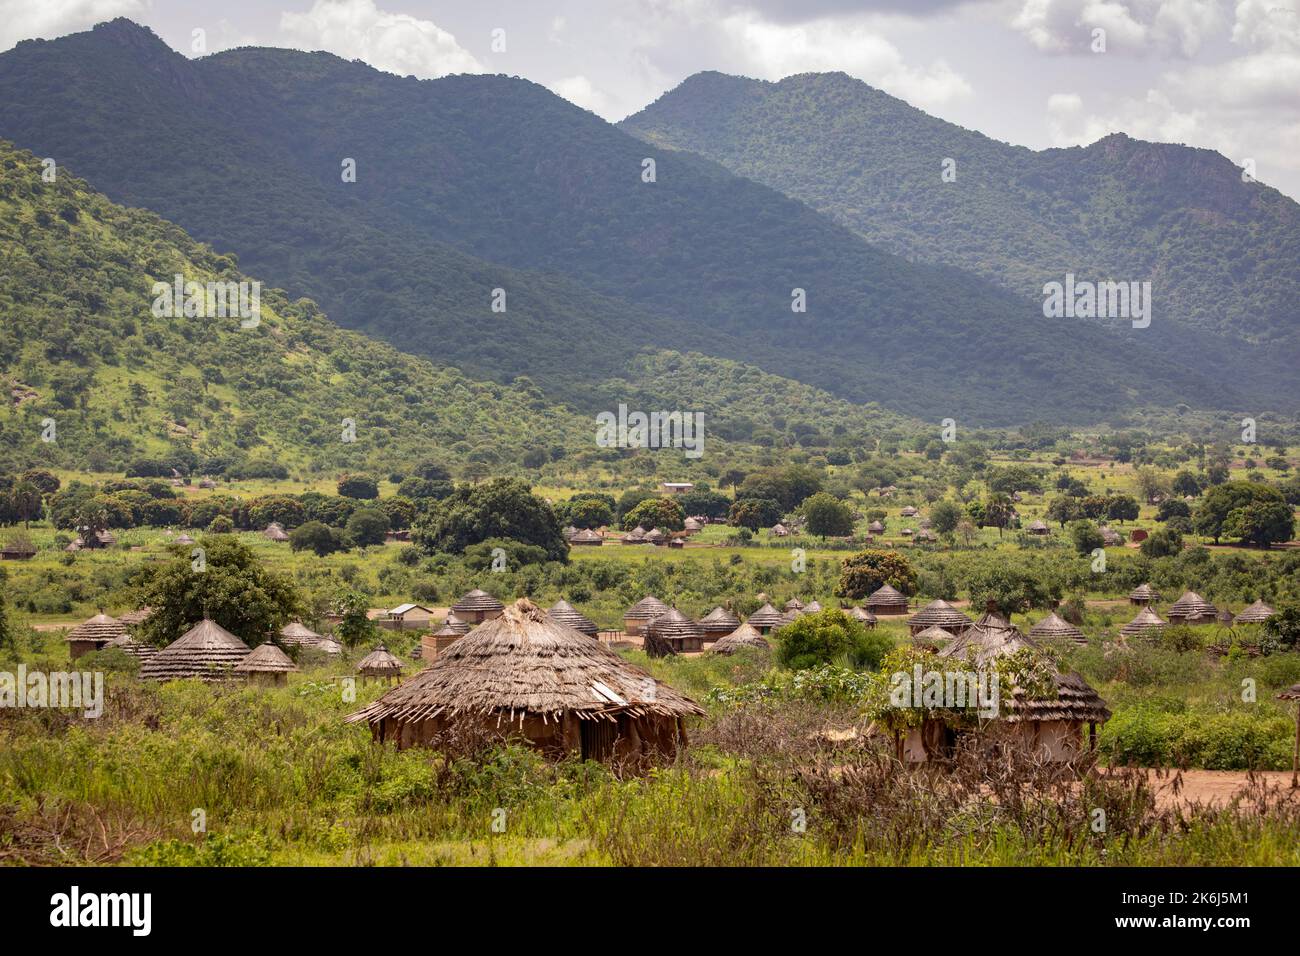 Wunderschöne Grasstrohschlammhäuser liegen in einem Tal unter den Hügeln und Bergen des Distrikts Abim, Uganda, Ostafrika. Stockfoto